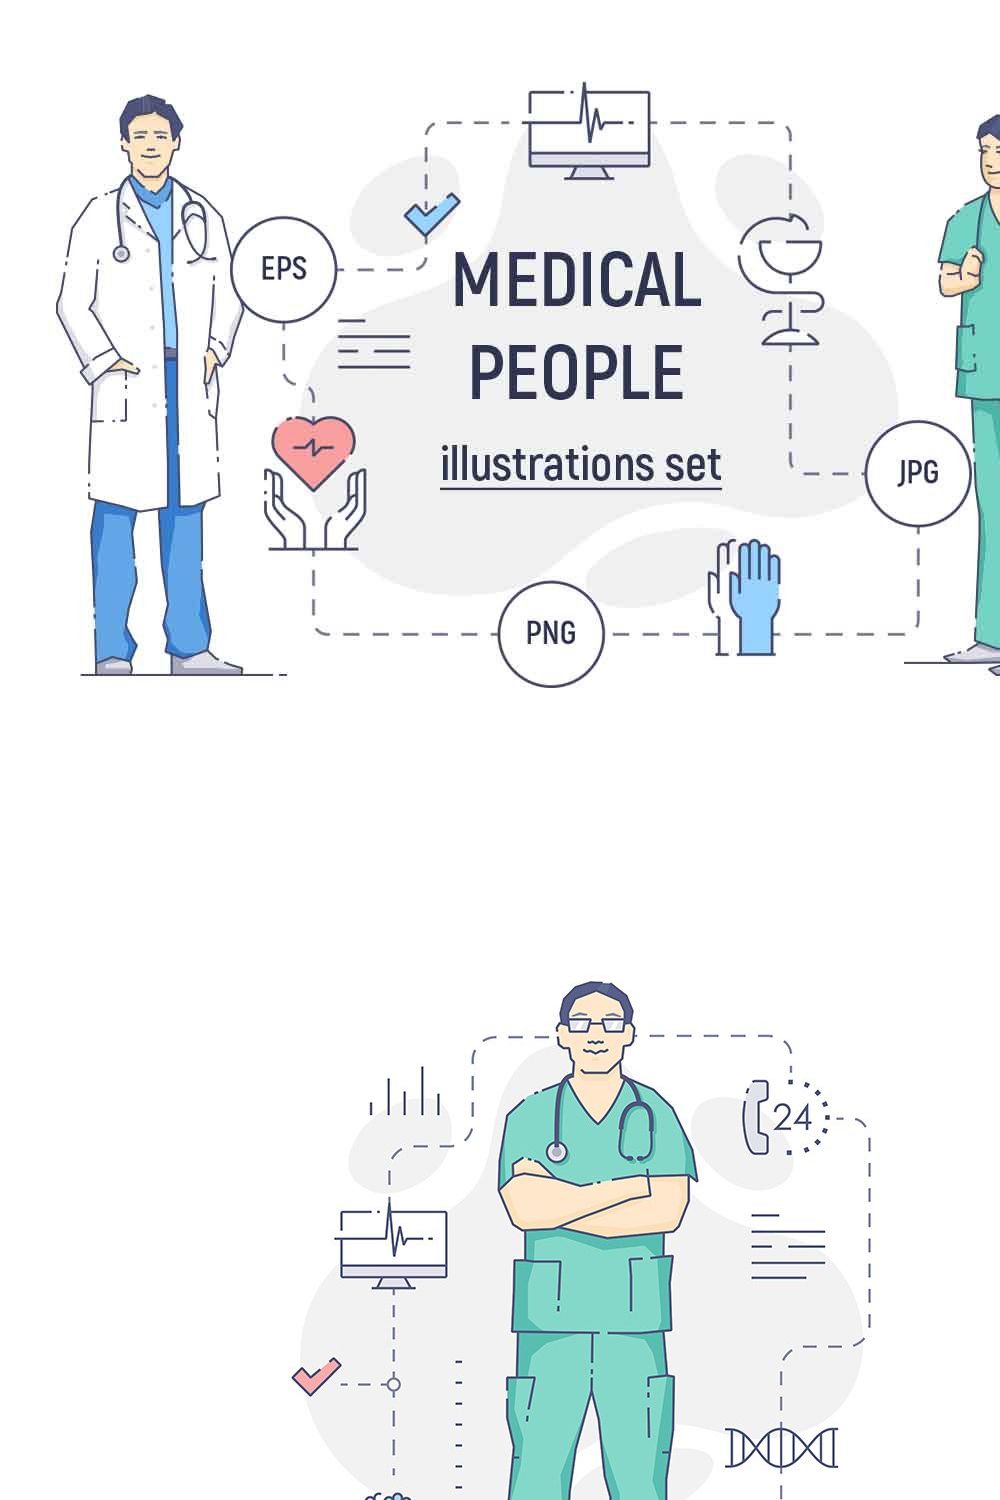 Medical people illustration set pinterest preview image.